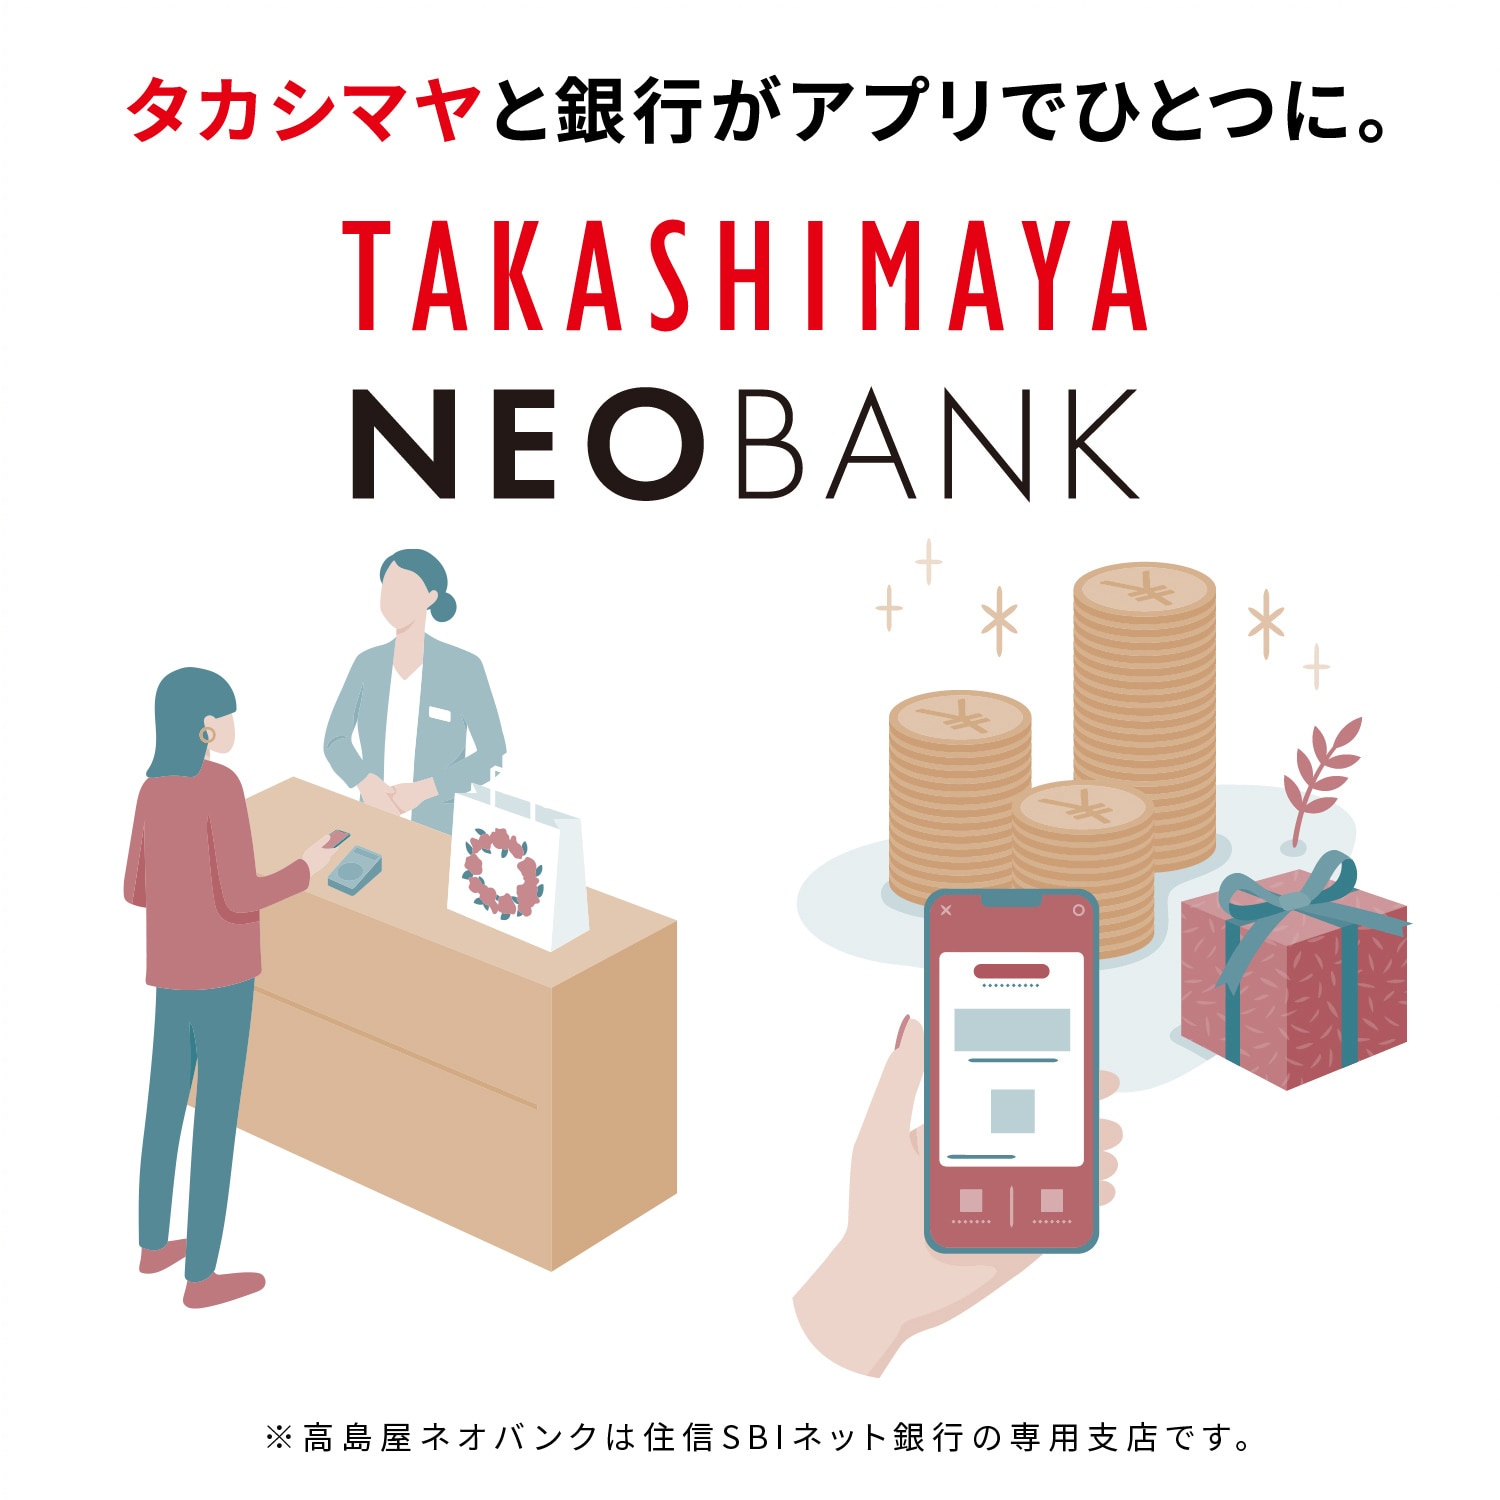 タカシマヤと銀行がアプリでひとつに。 TAKASHIMAYA NEOBANK ※TAKASHIMAYA NEOBANKは住信SBIネット銀行の専用支店です。